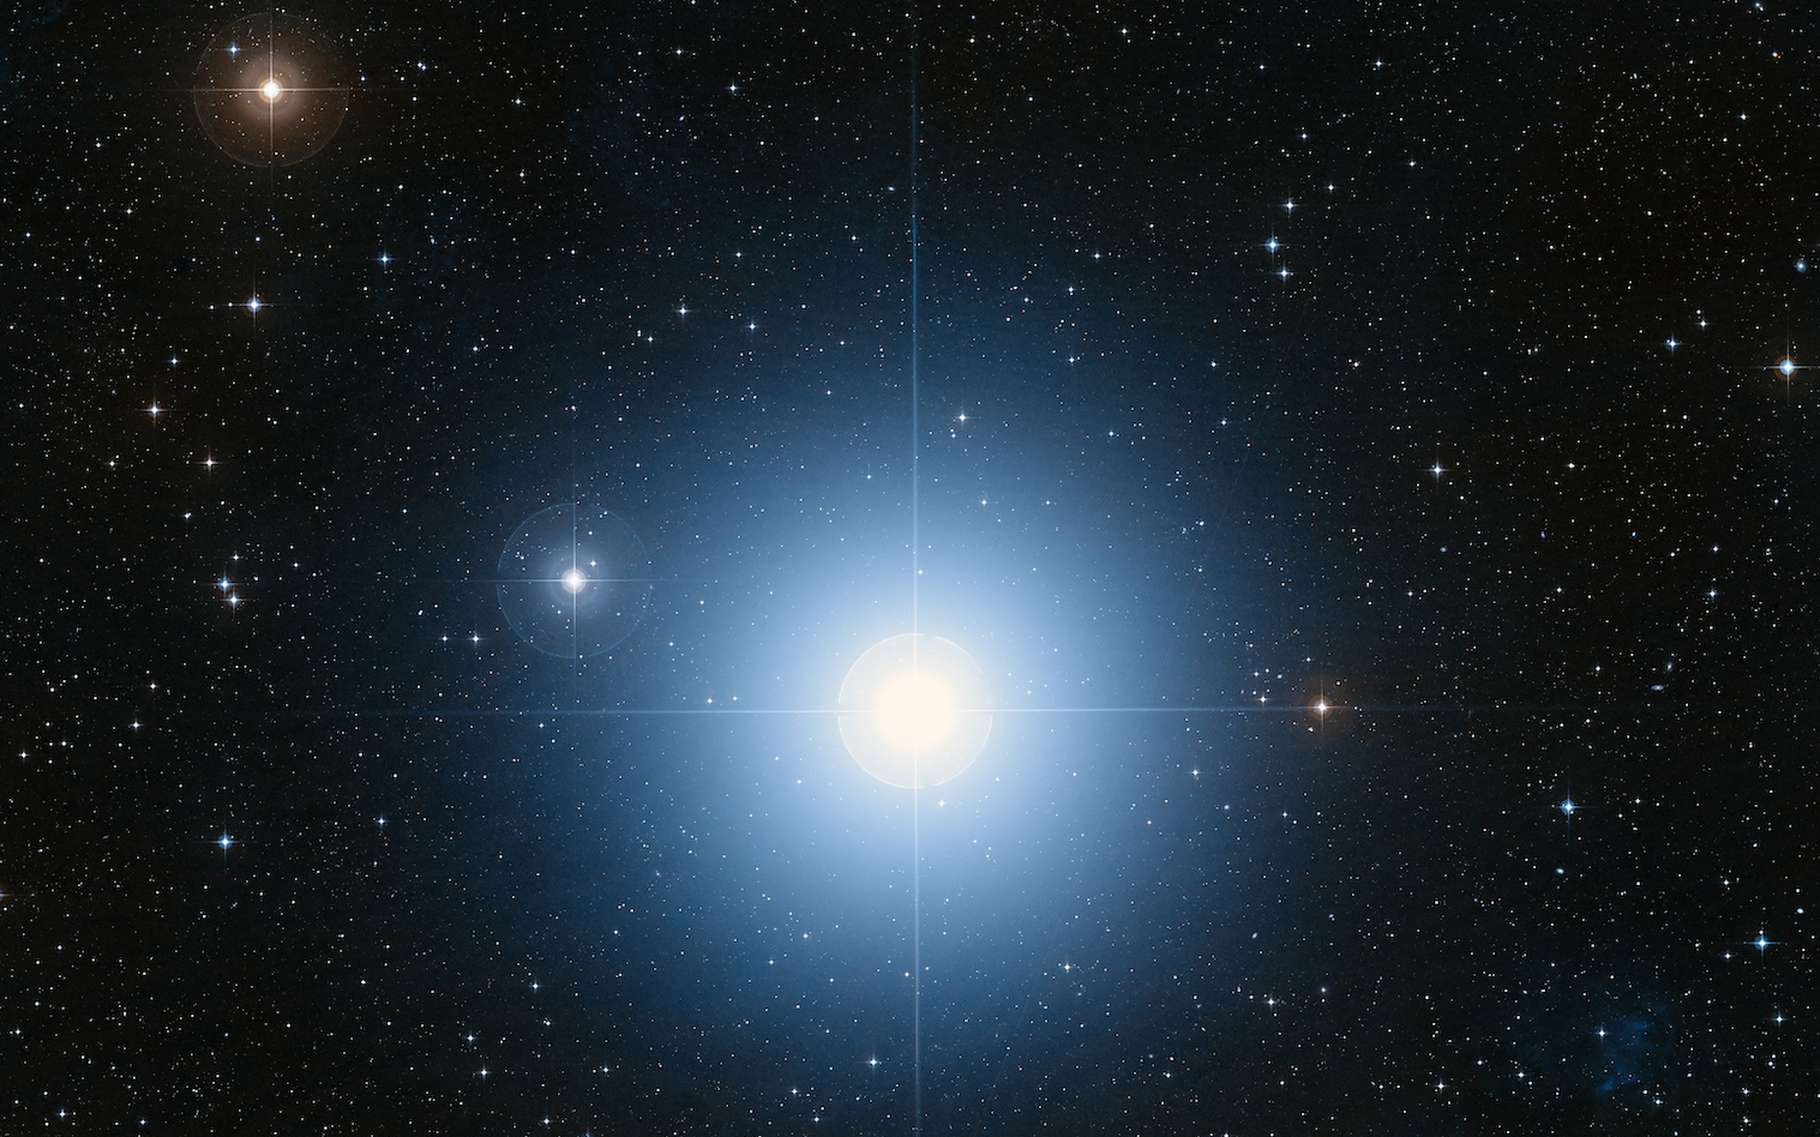 La ceinture d'astéroïdes observée par le télescope James-Webb déconcerte les astronomes